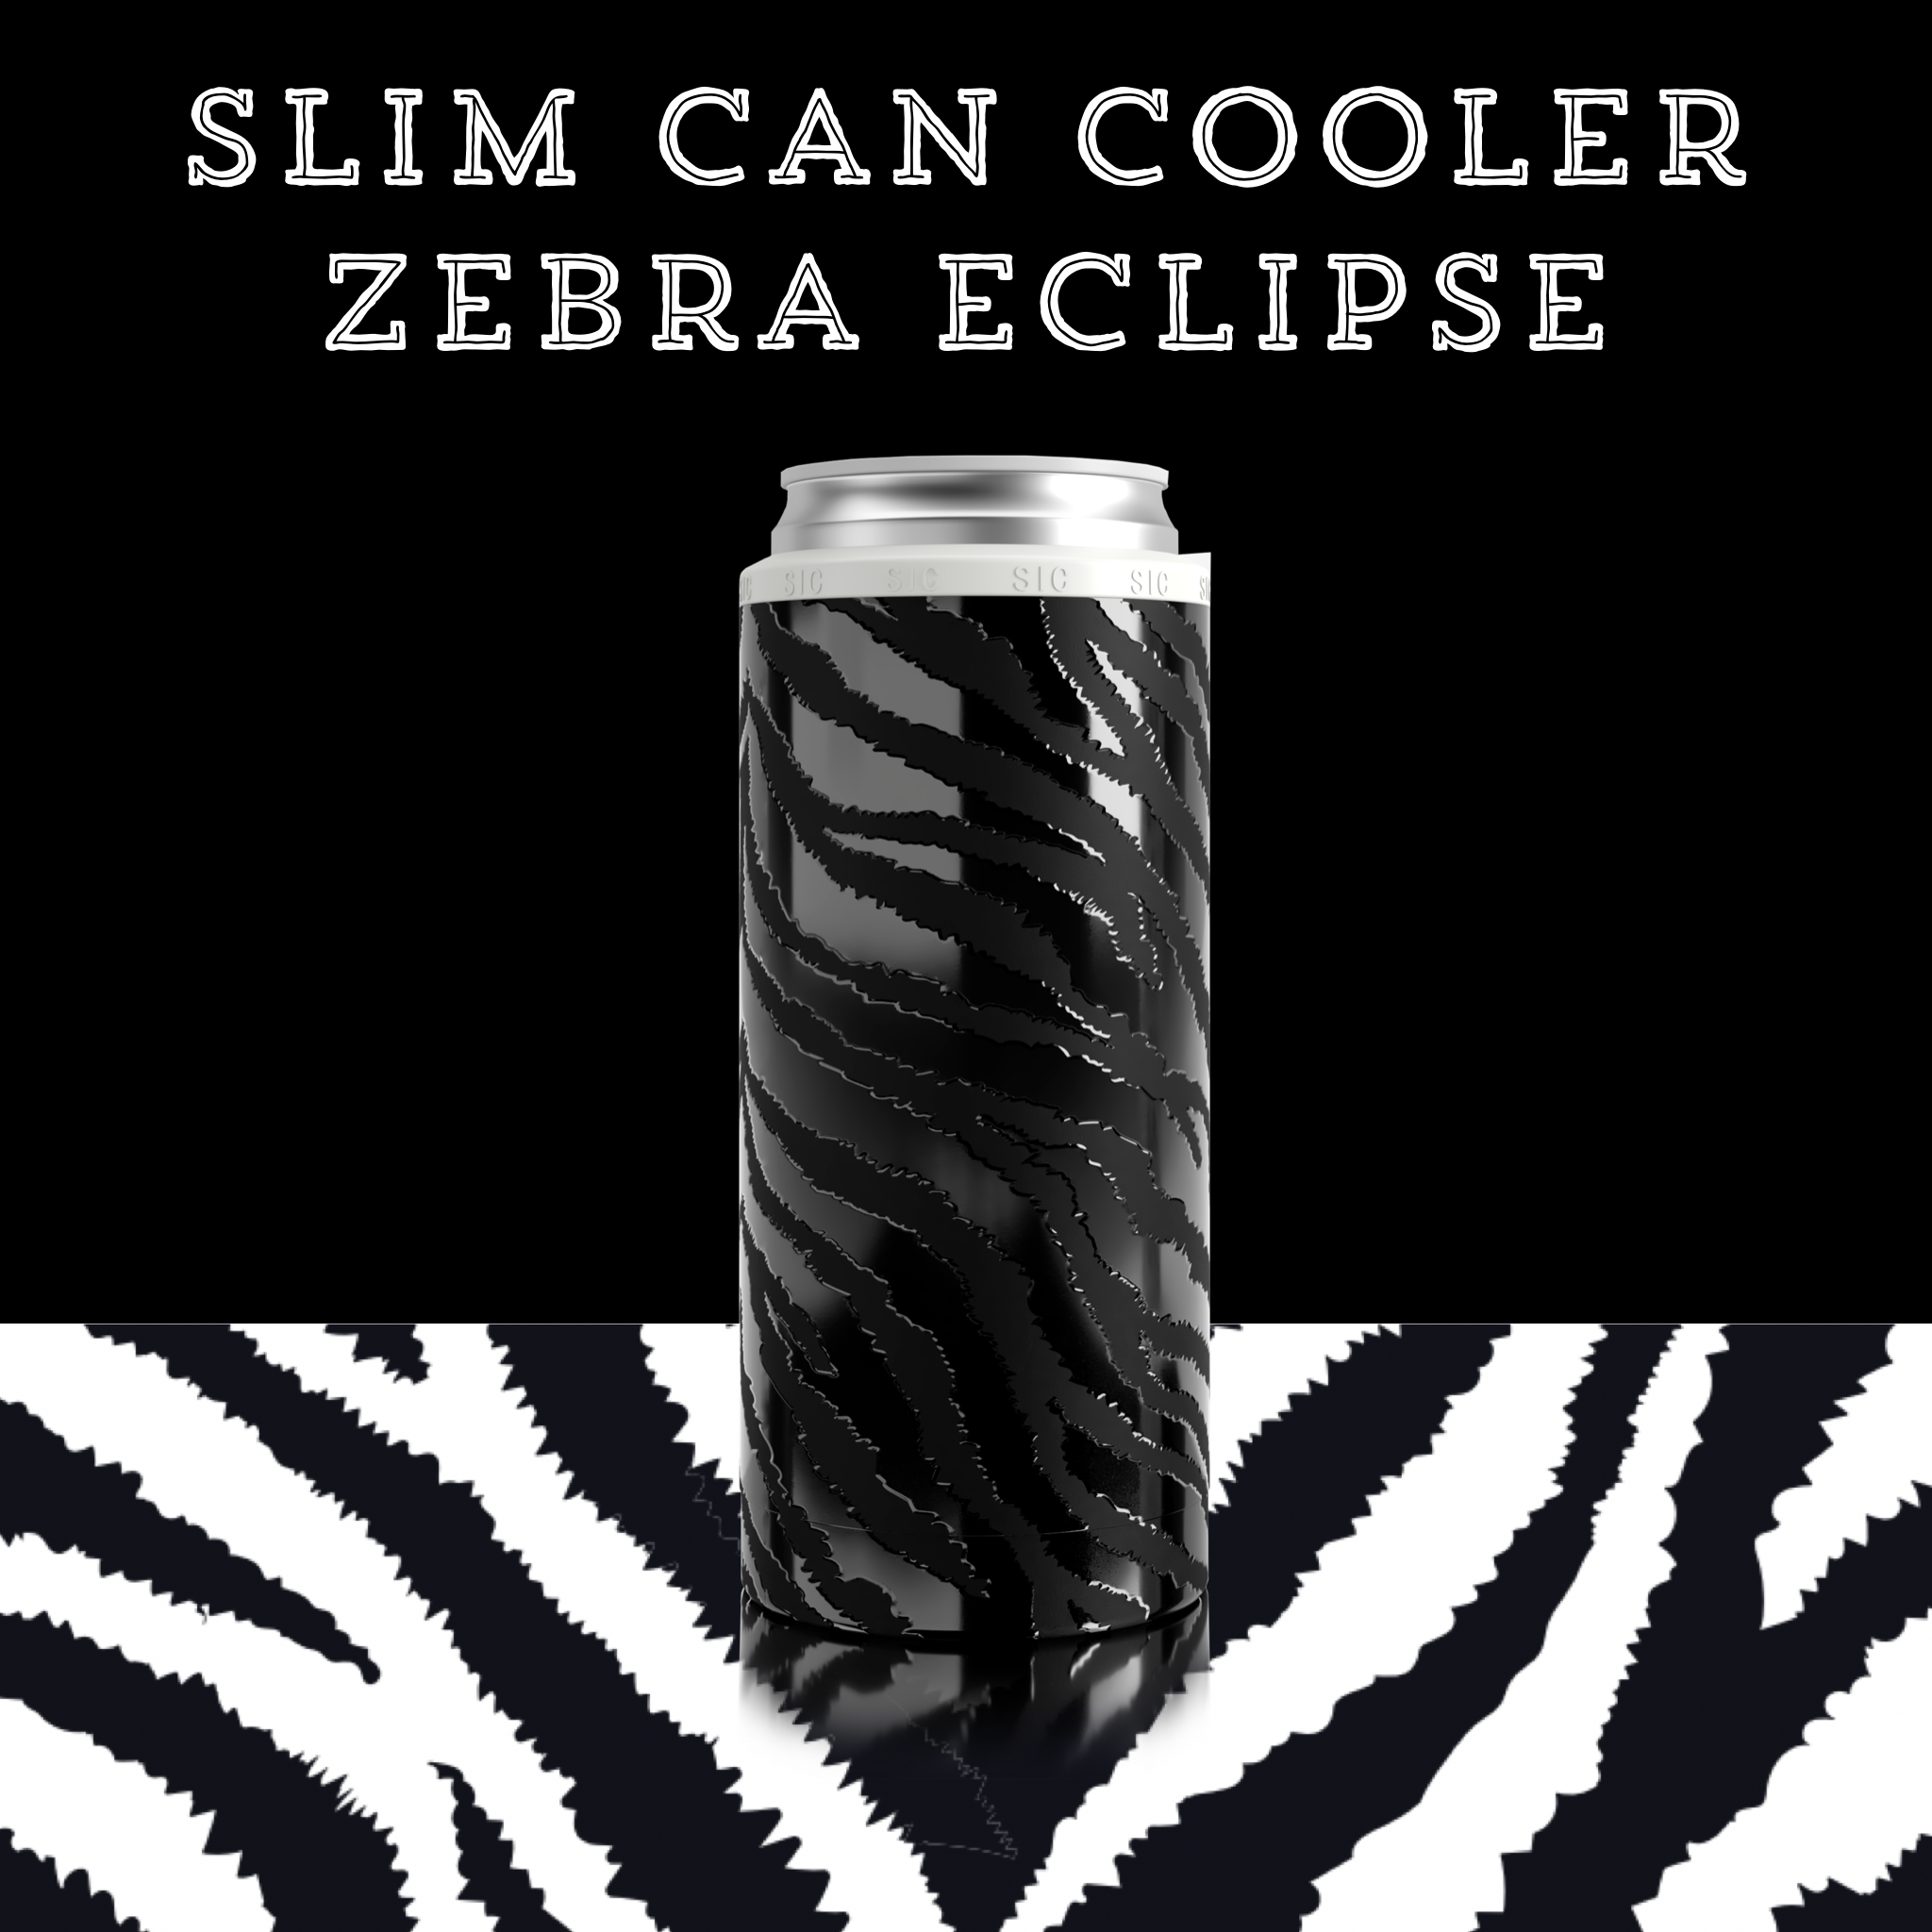 SIC® Slim Can Cooler Zebra Eclipse